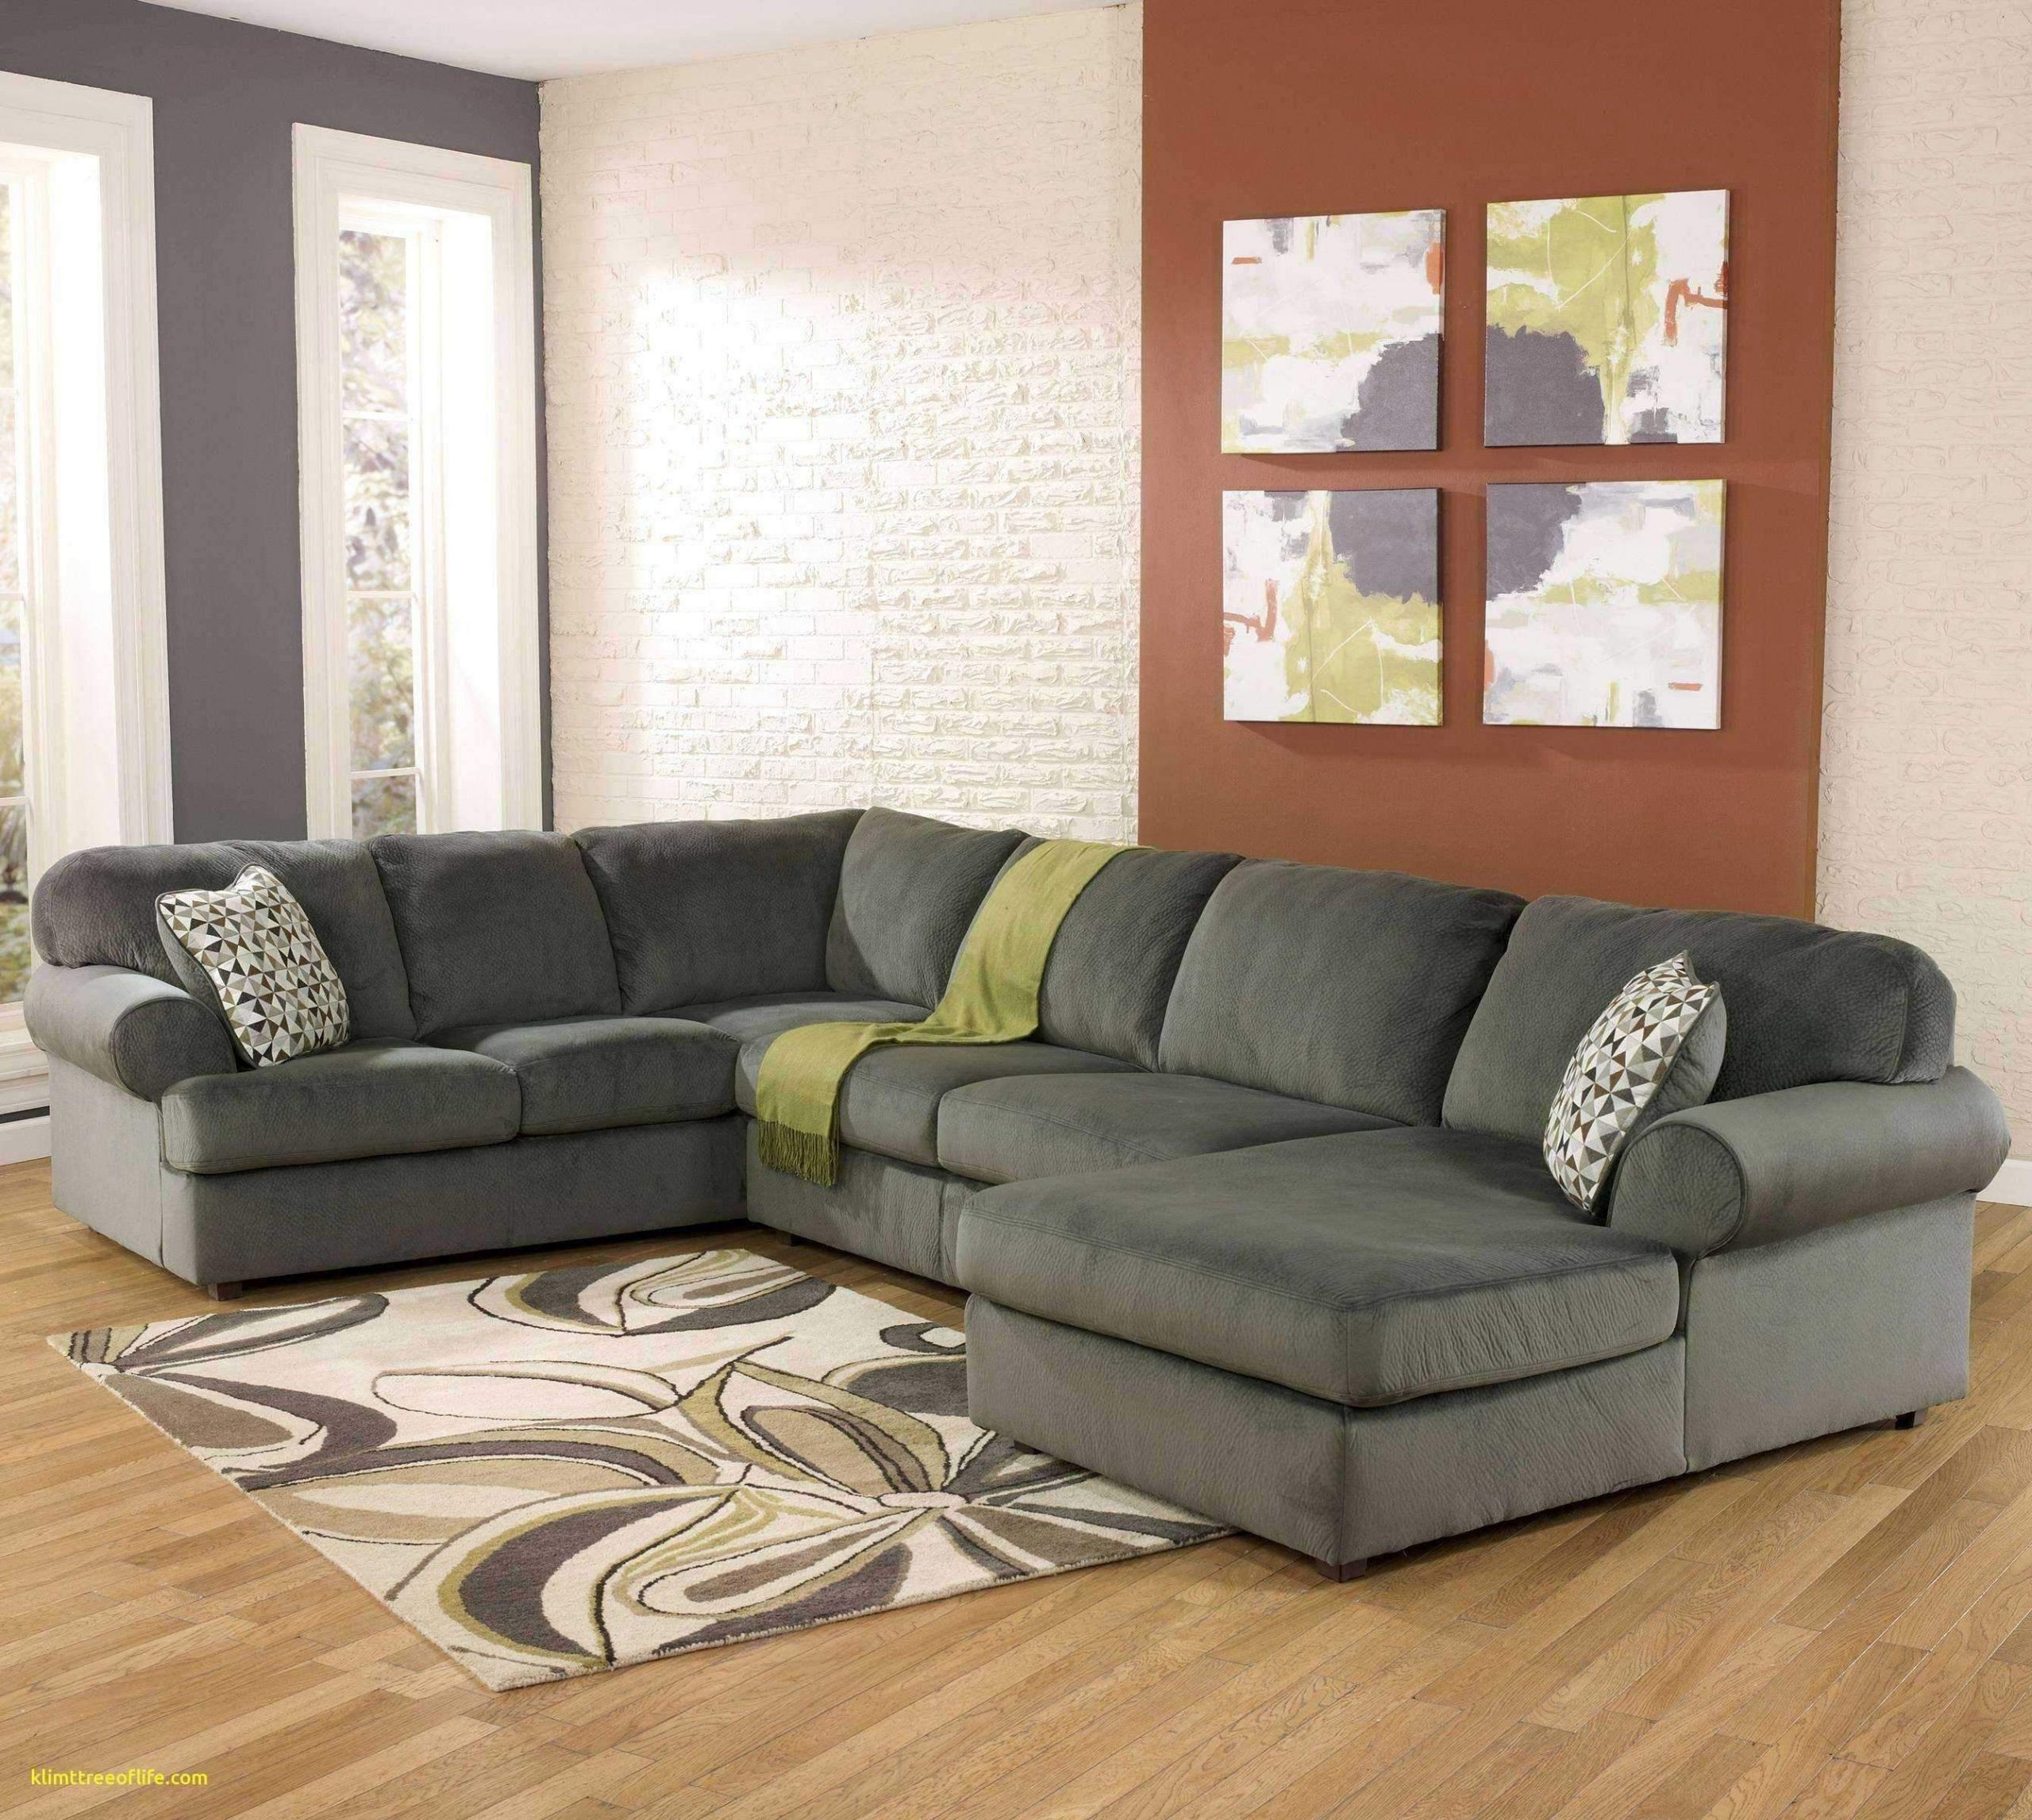 wohnzimmer grau grun einzigartig 40 luxus von sofa klein gunstig ideen of wohnzimmer grau grun